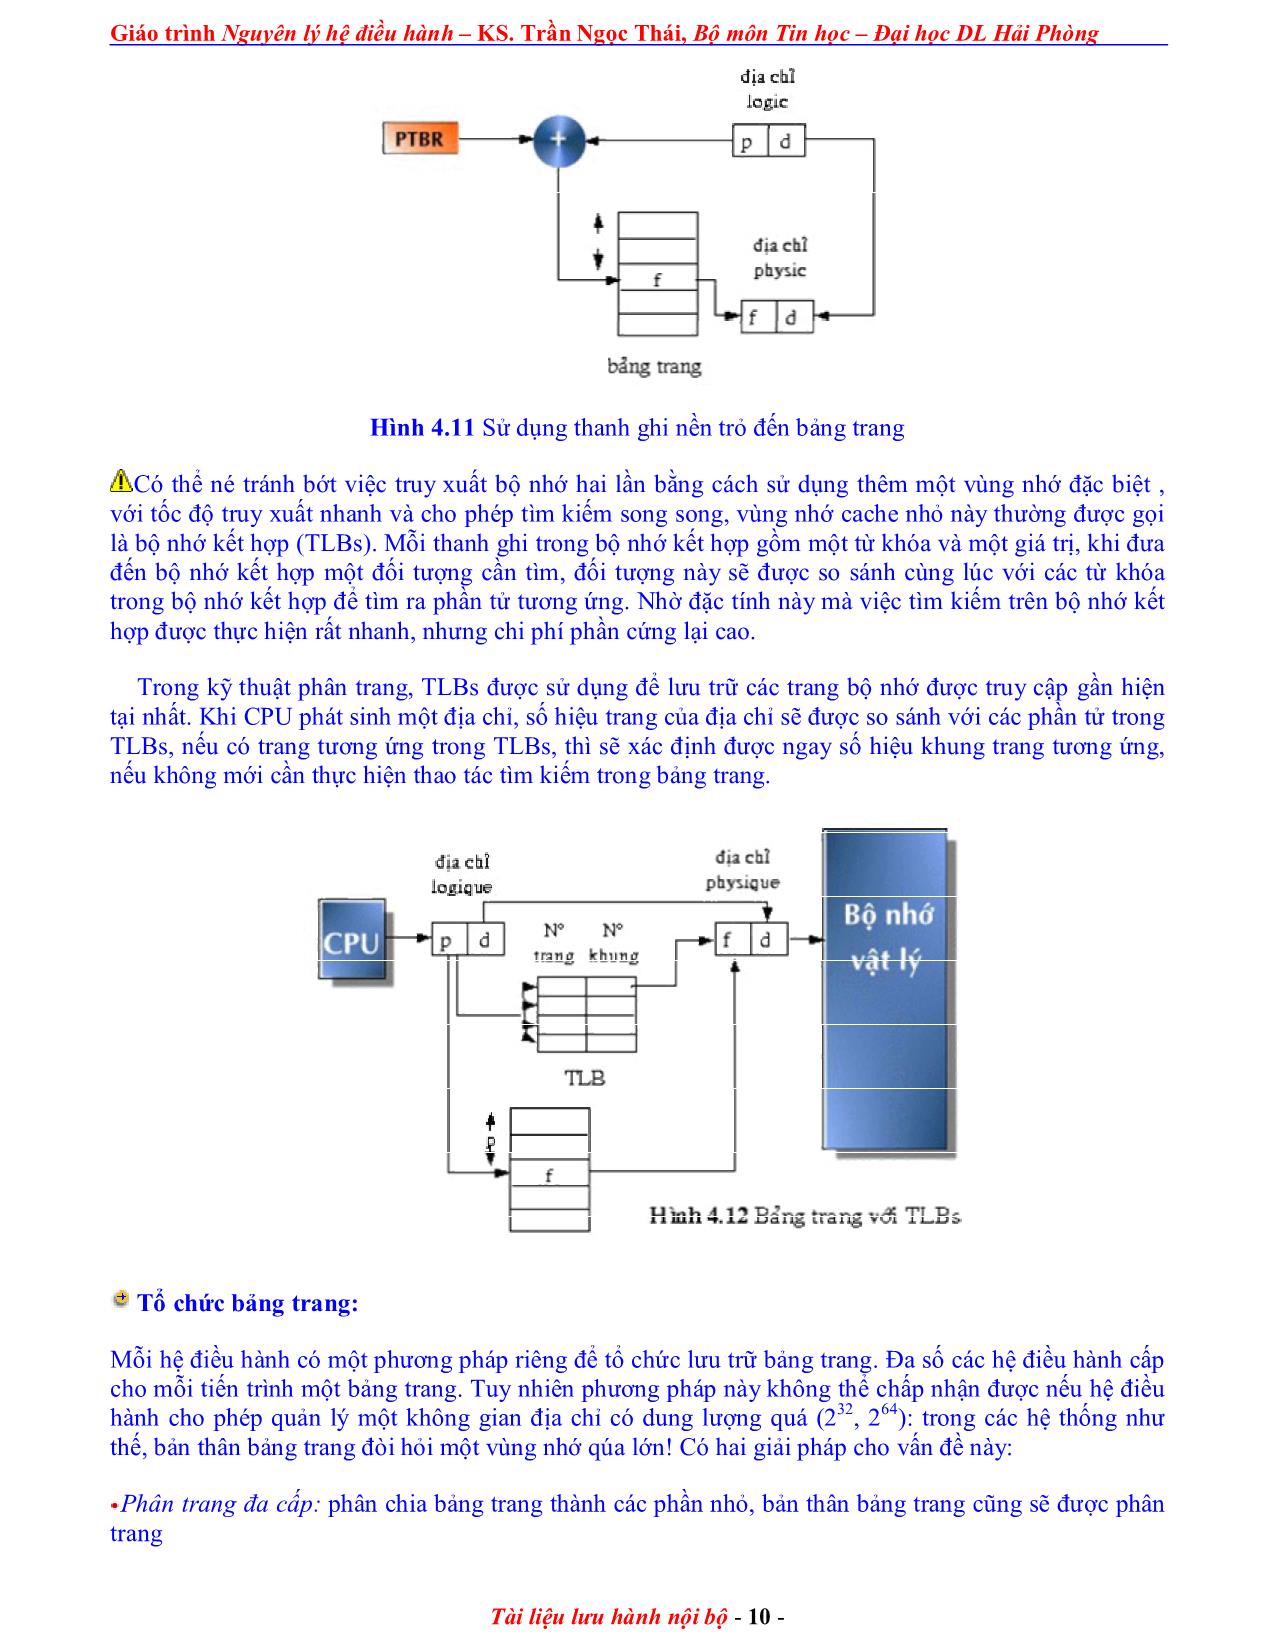 Giáo trình Nguyên lý điều hành (Phần 2) trang 10